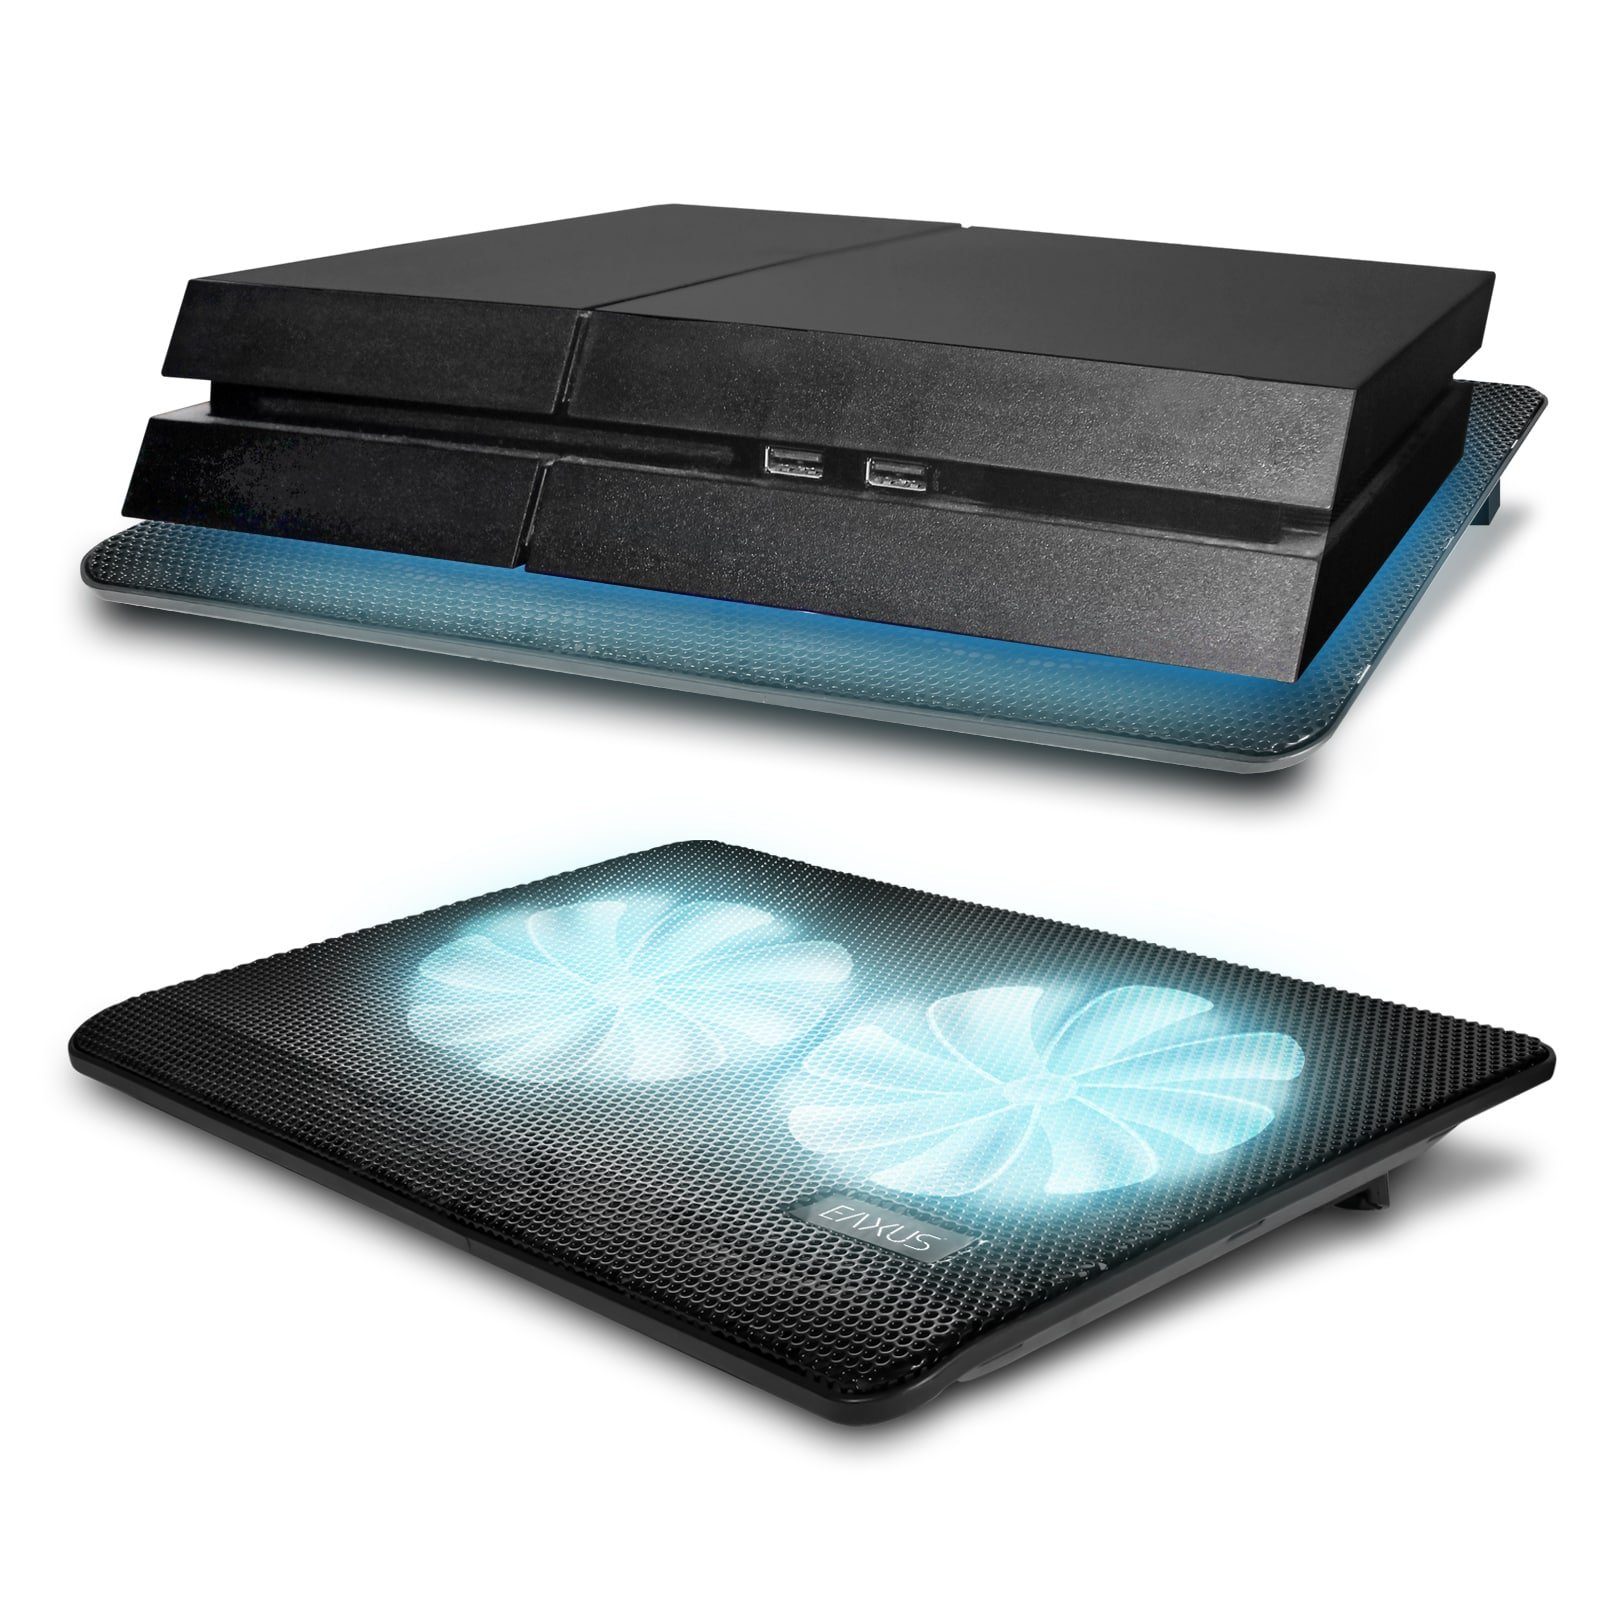 blauer Laptops LED-Beleuchtung EAXUS PlayStation Konsolen. mit Kühler, Notebook-Kühler auch Lüfter 4, für PS5, & Padeax weitere